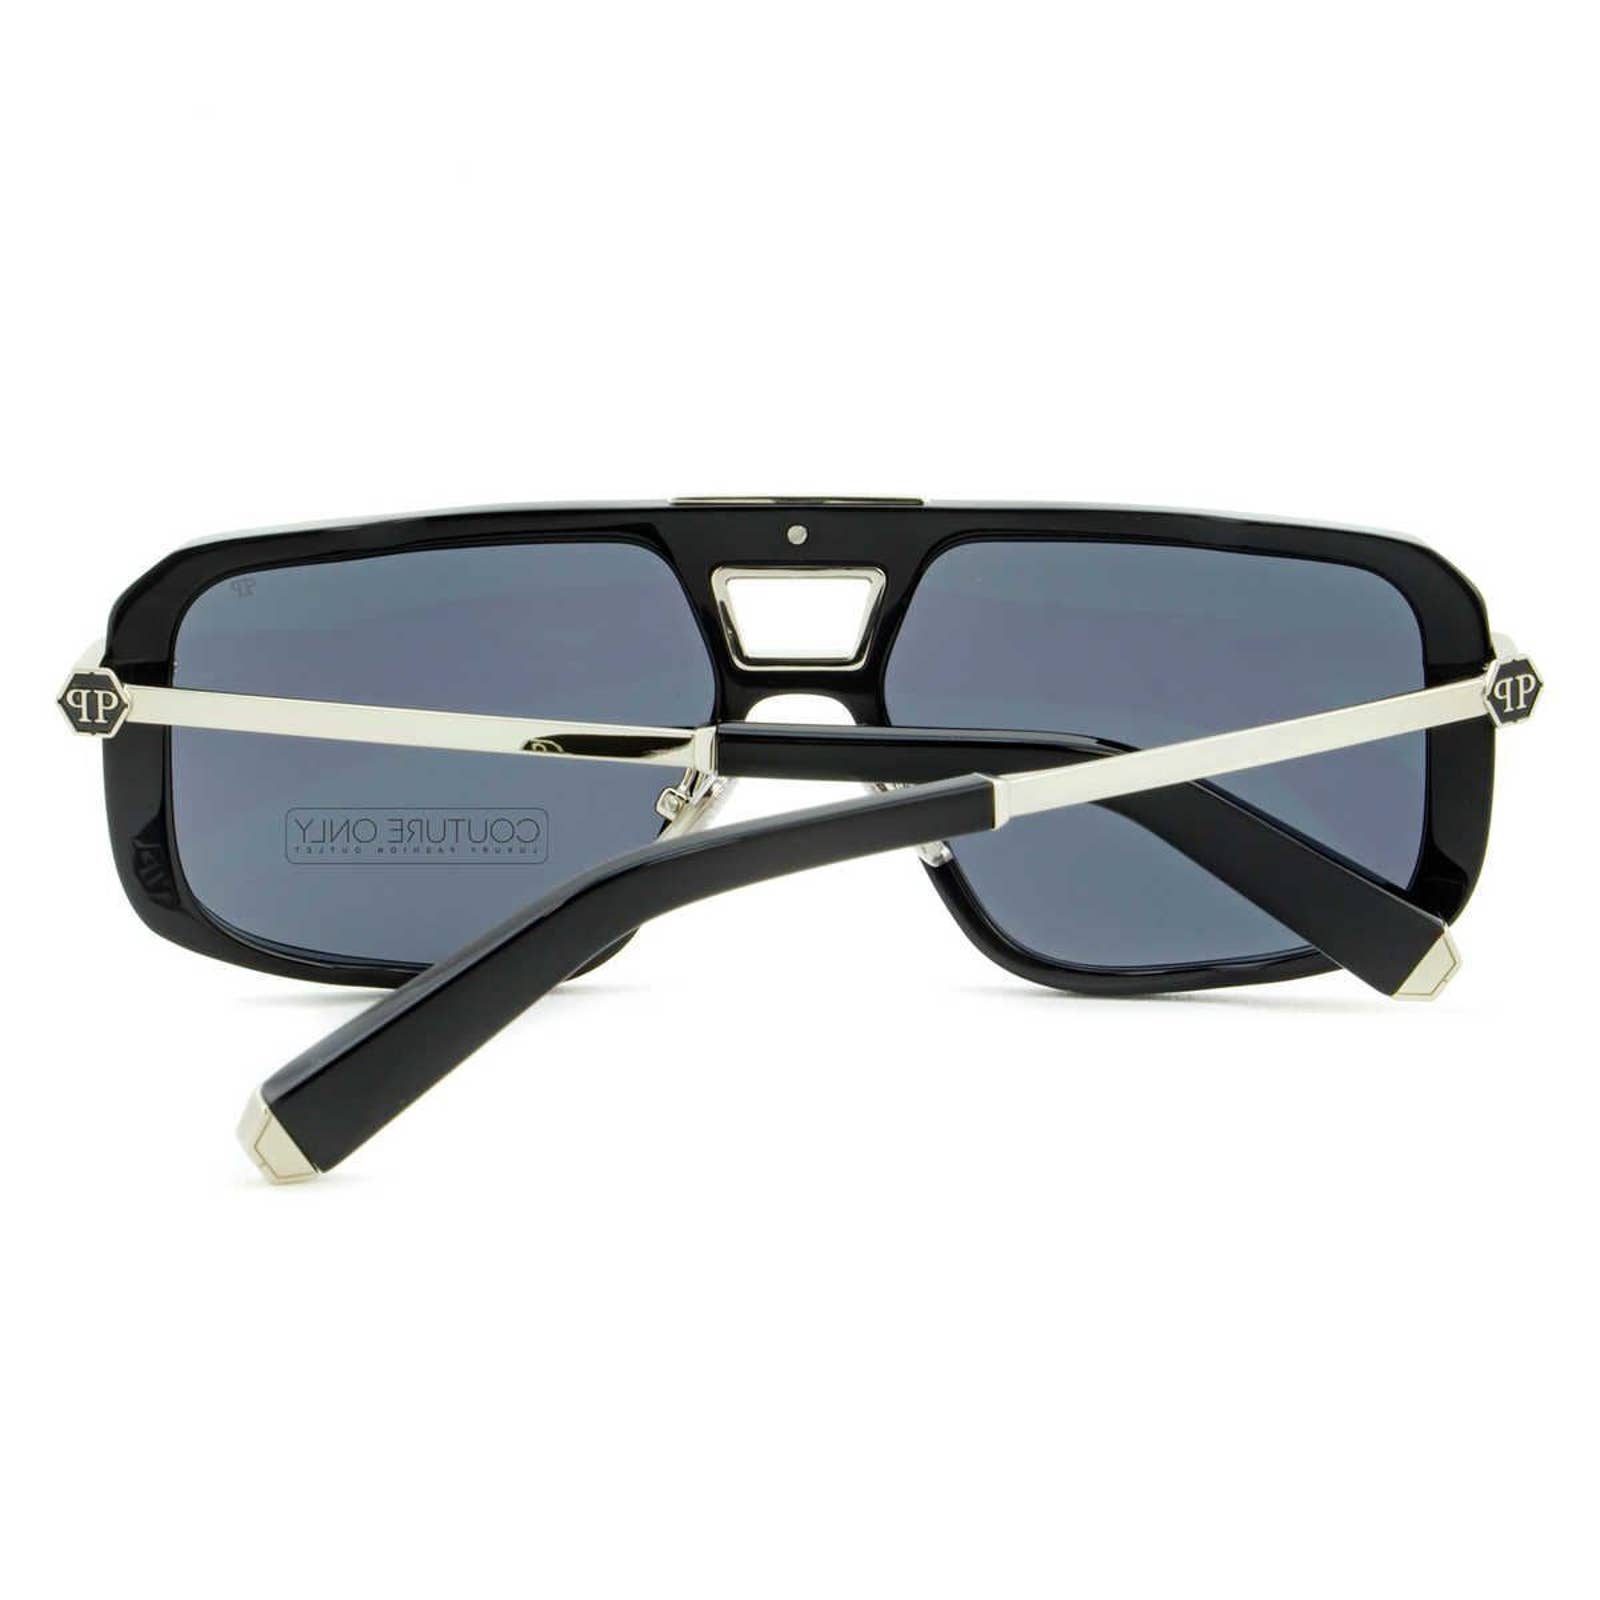 Men Square Shield Black Silver Sunglasses SPP008M-0700